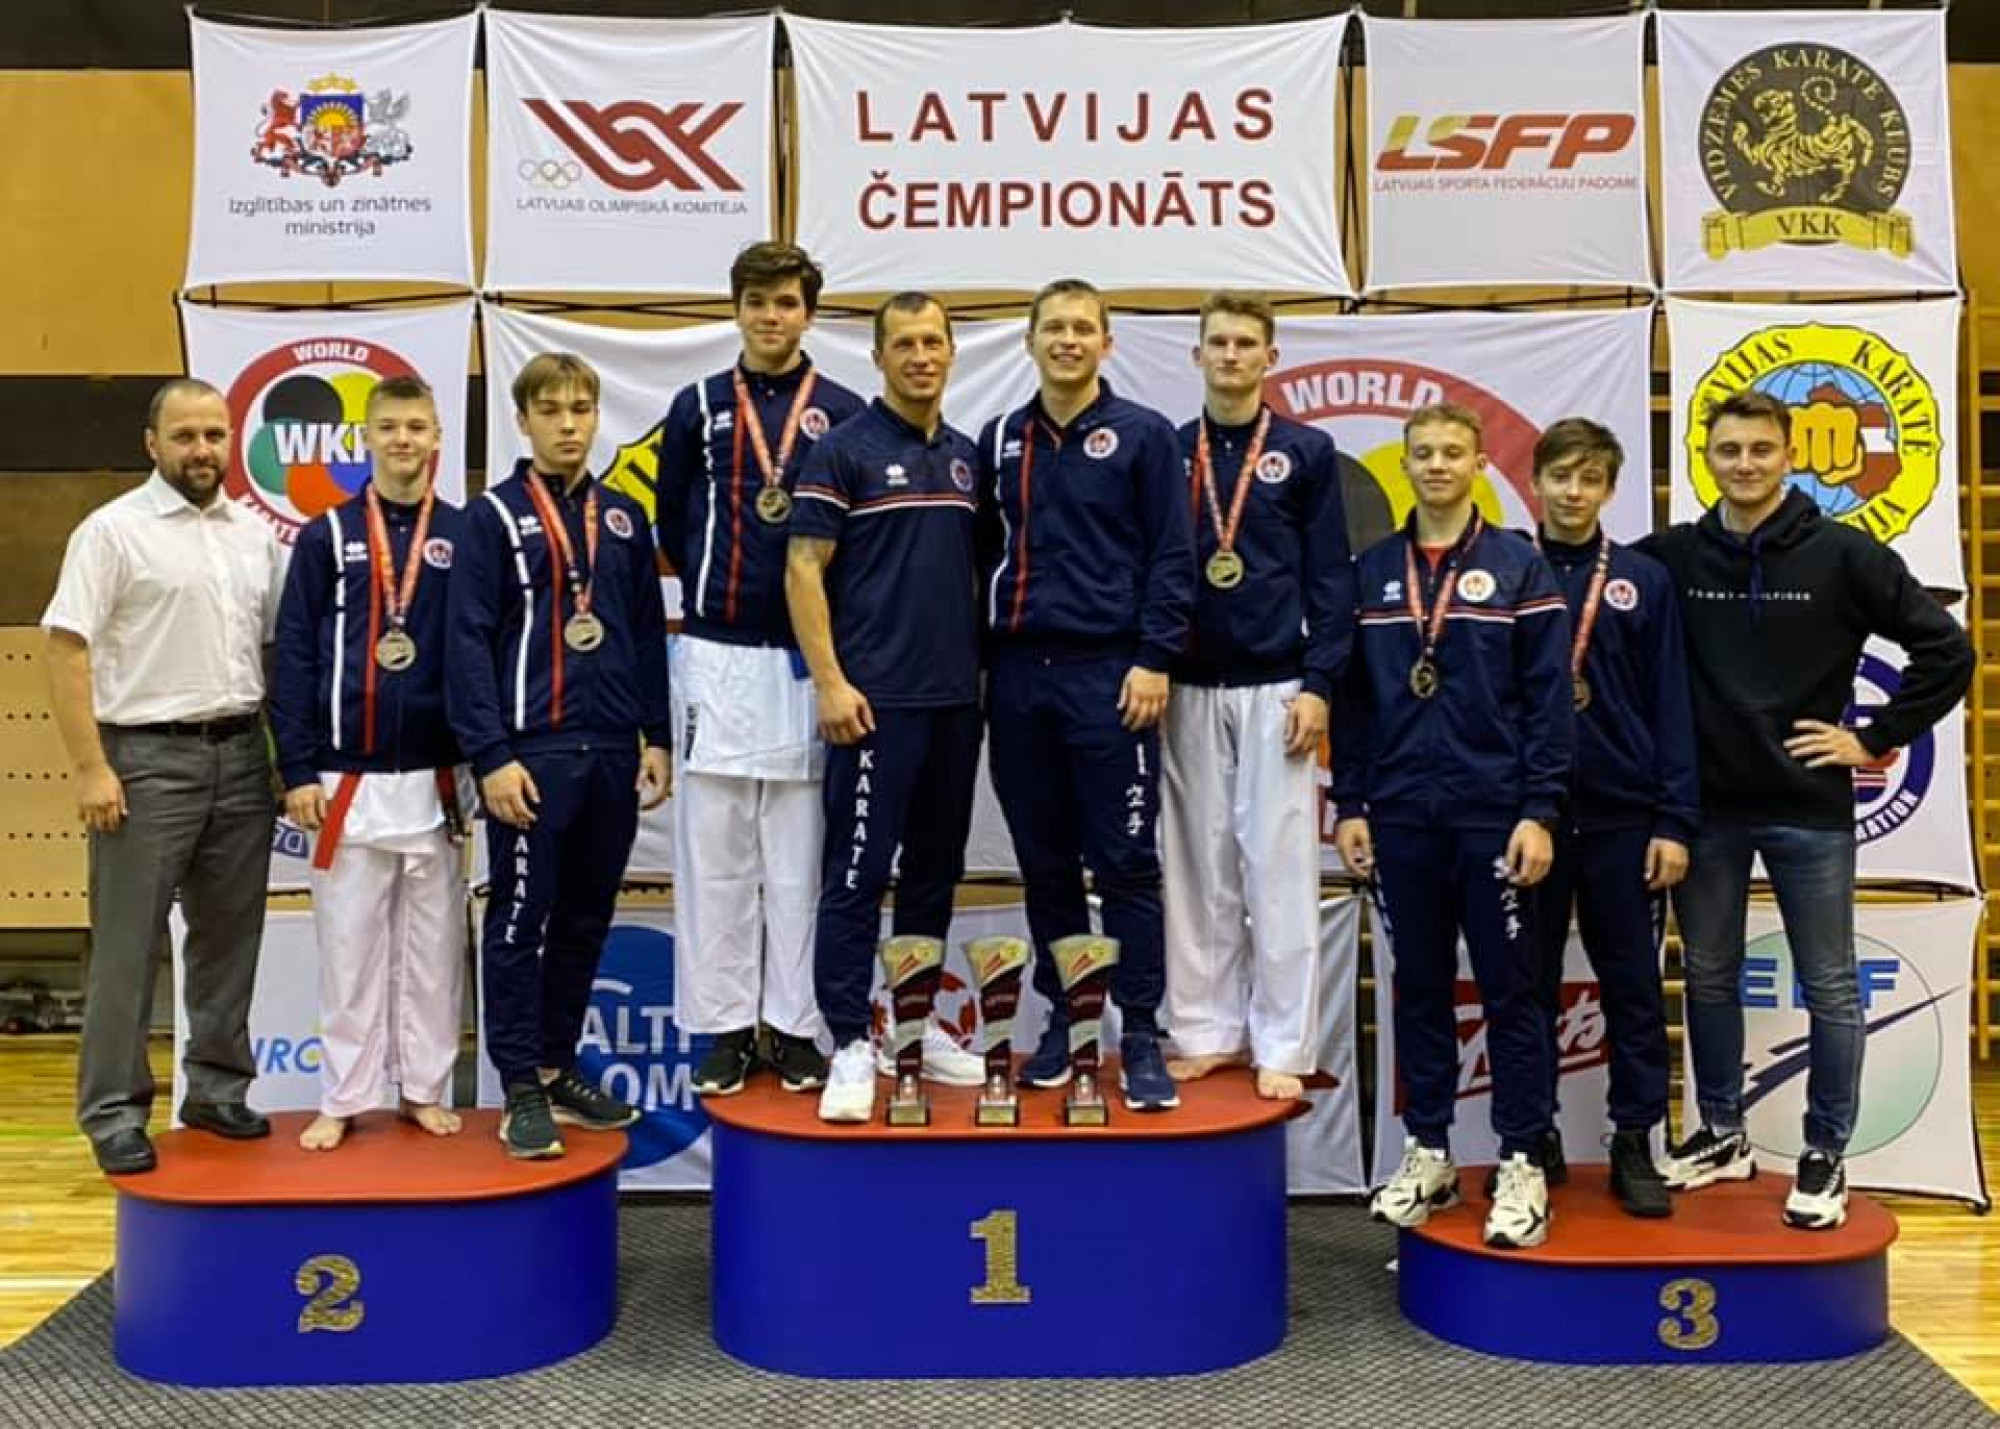 Latvijas Cempionats 2021